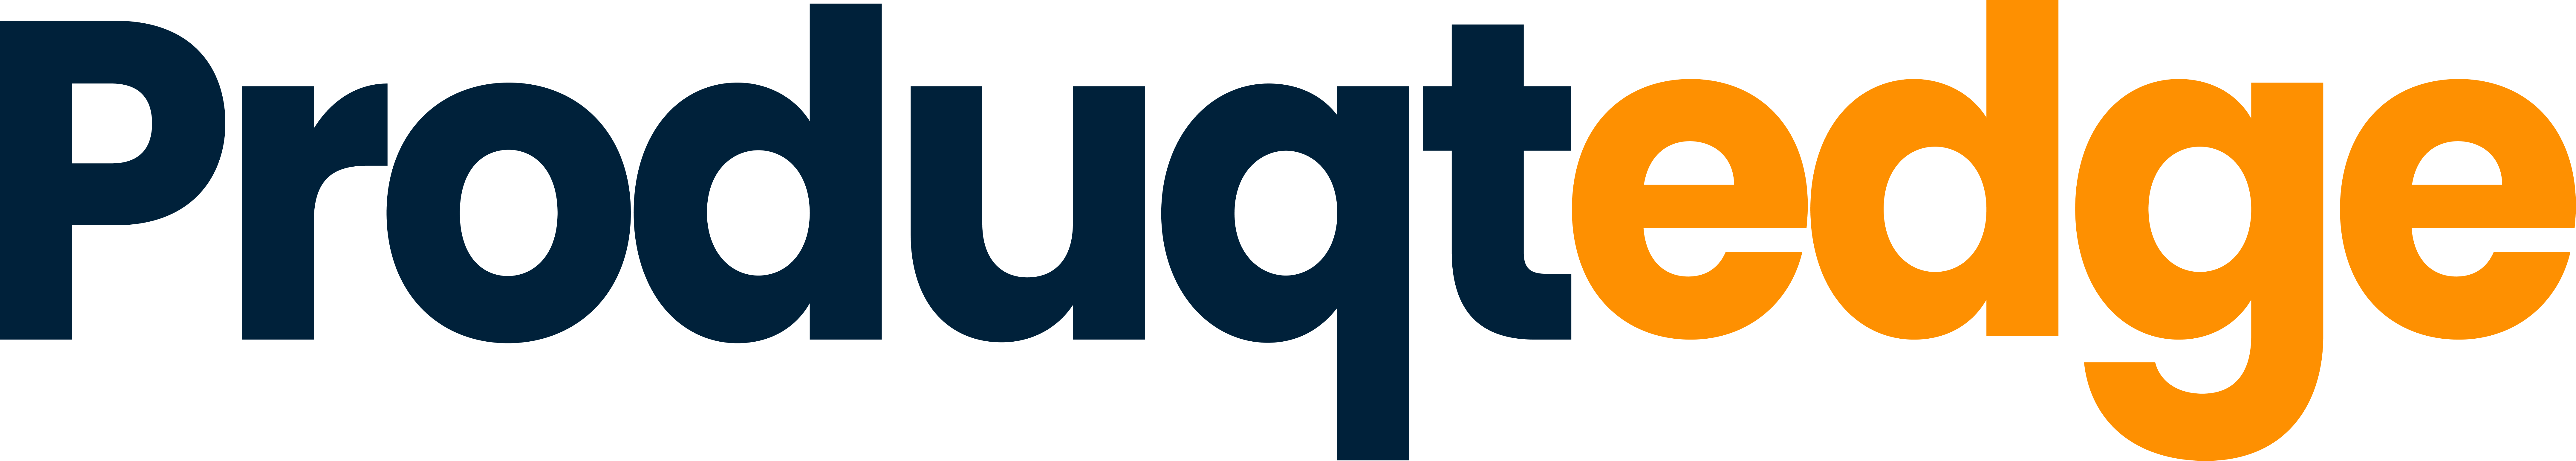 Produqtegde Logo